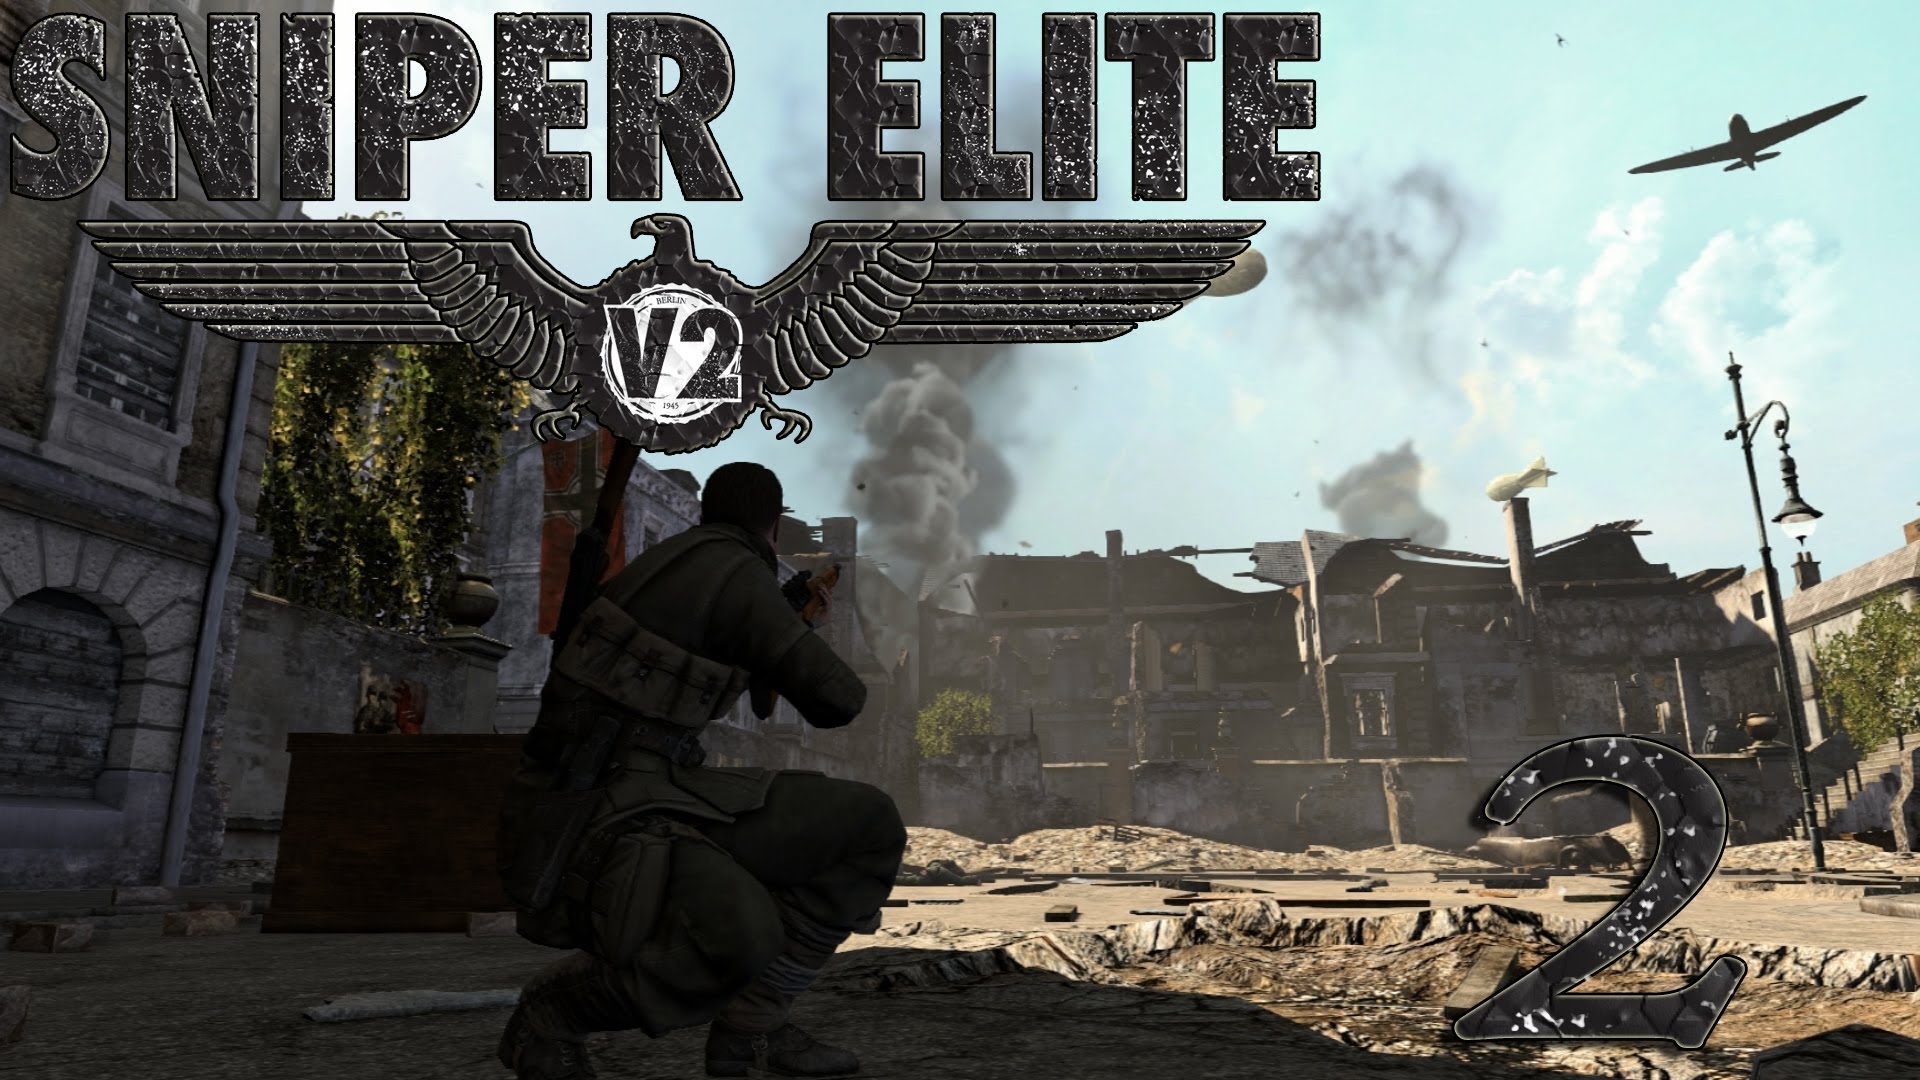 download elite sniper 5 for free